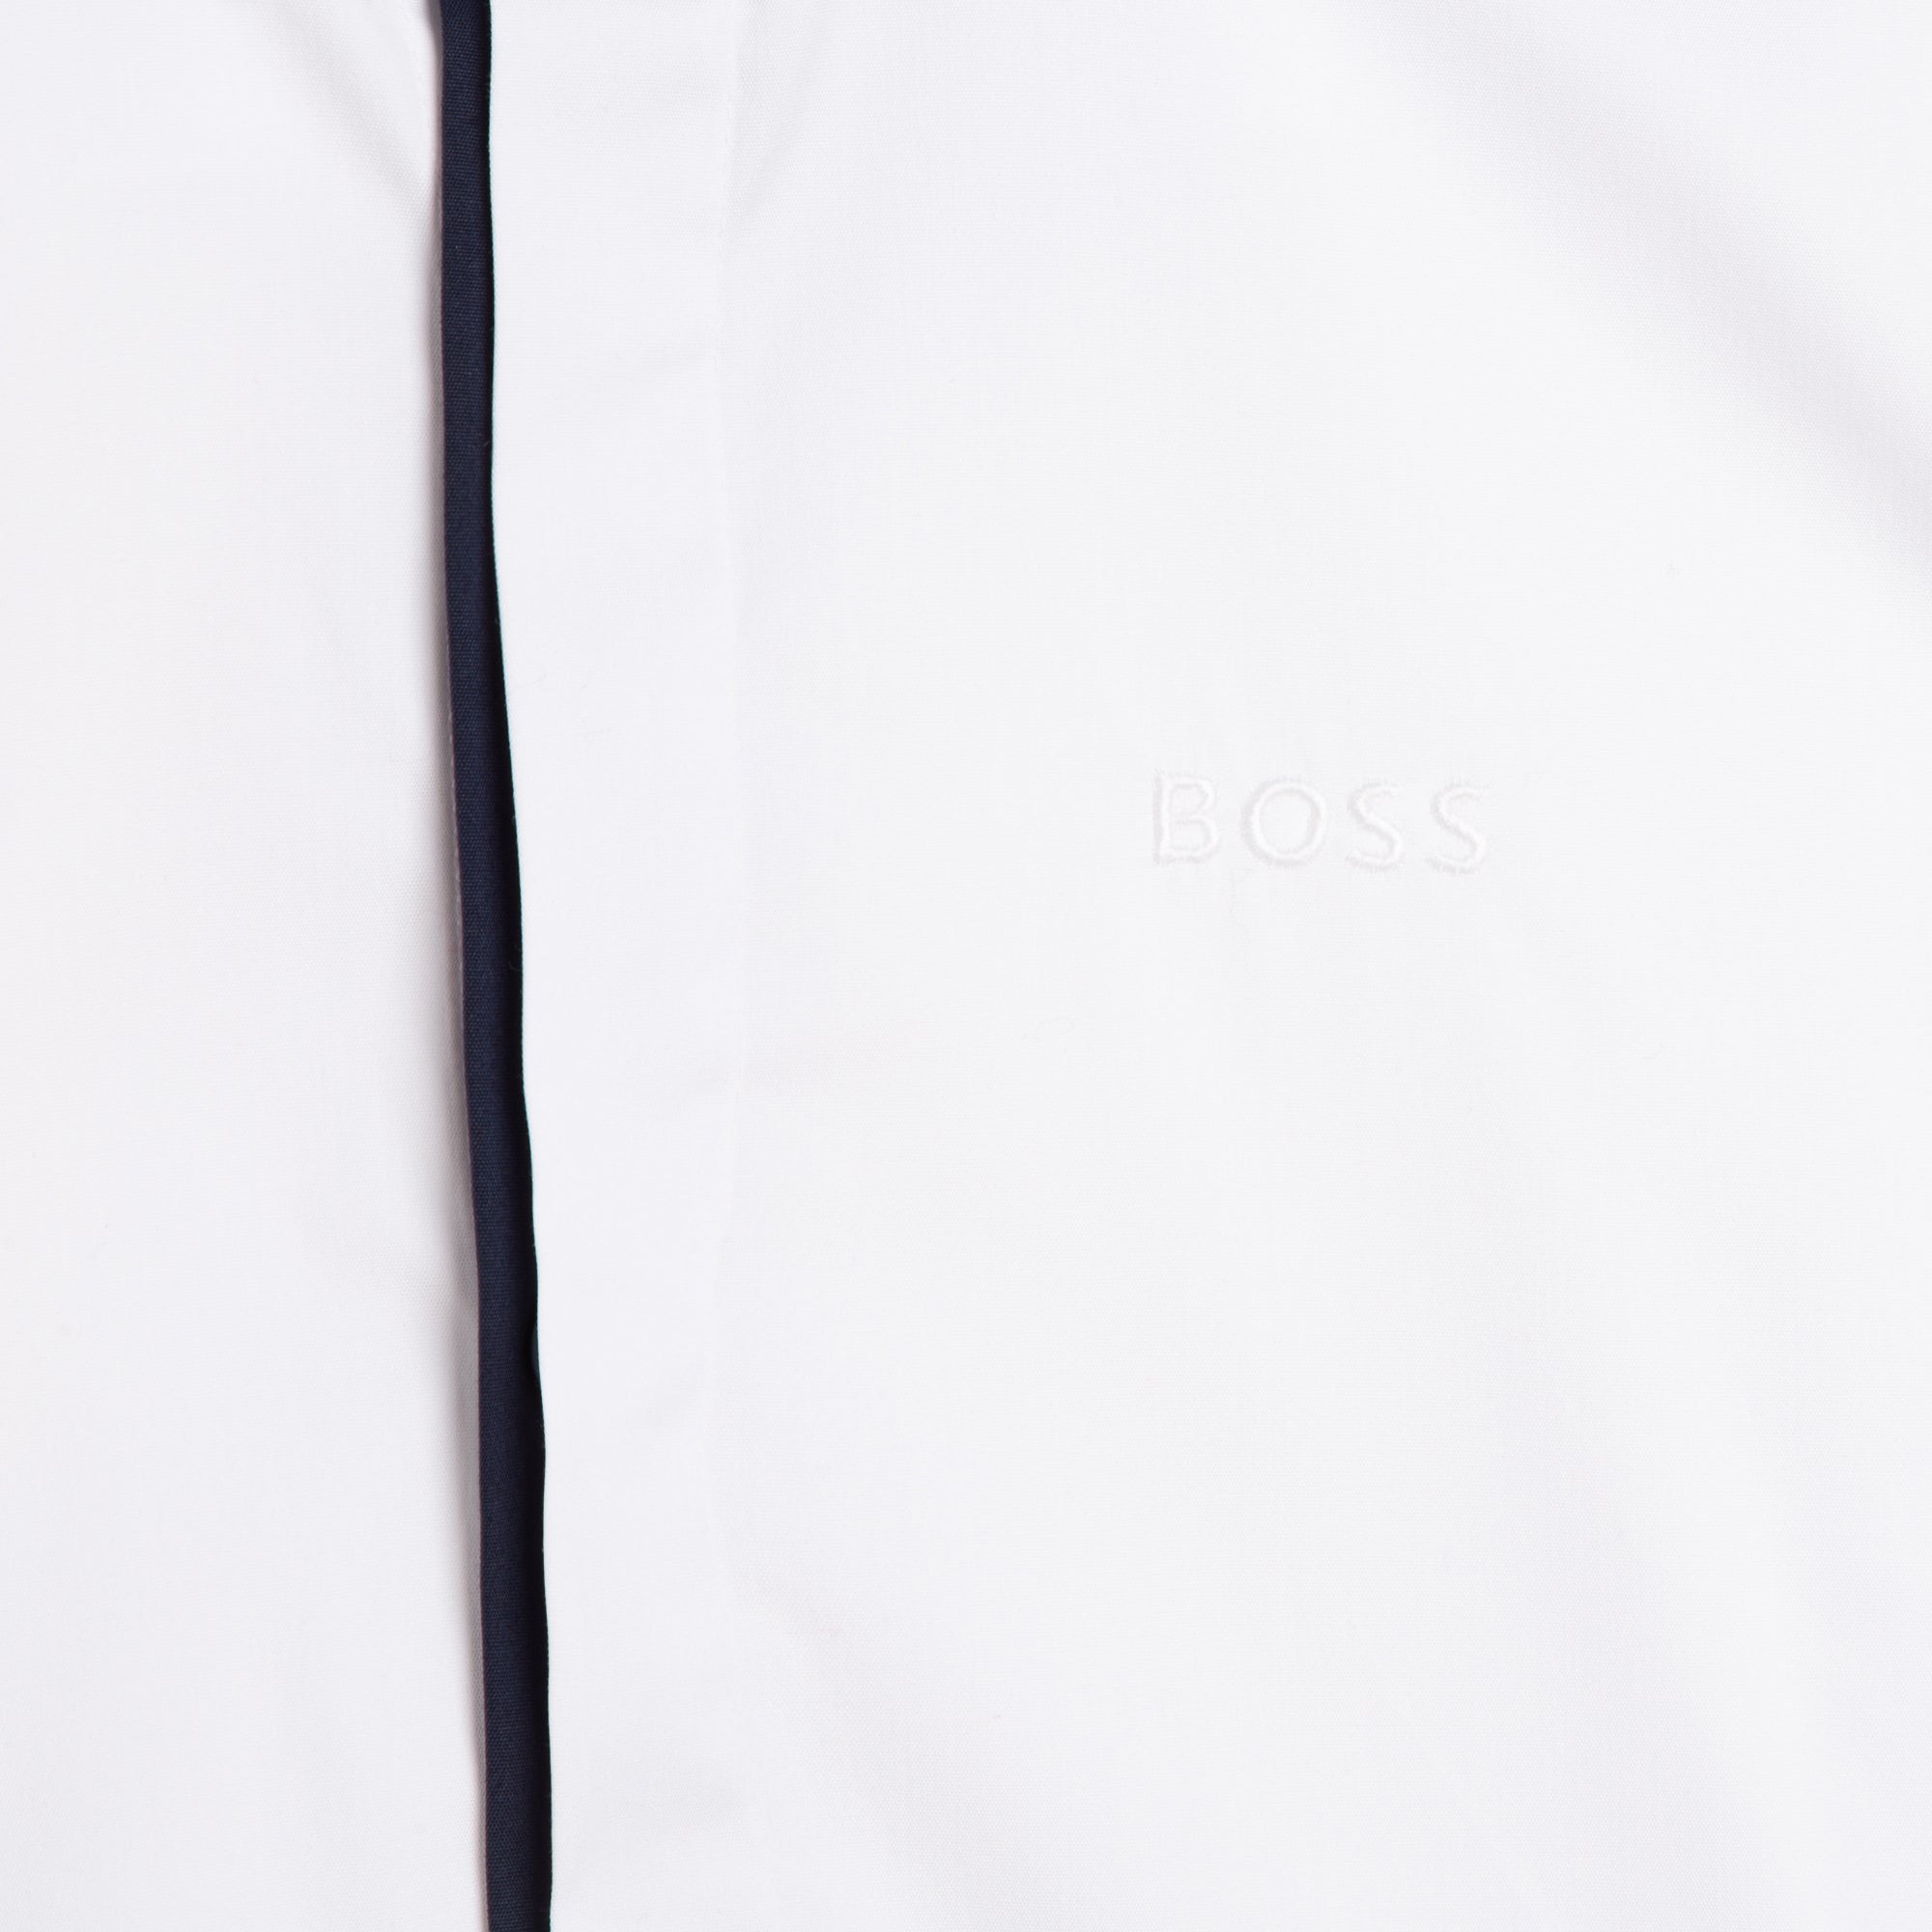 Hugo Boss White Dress Shirt